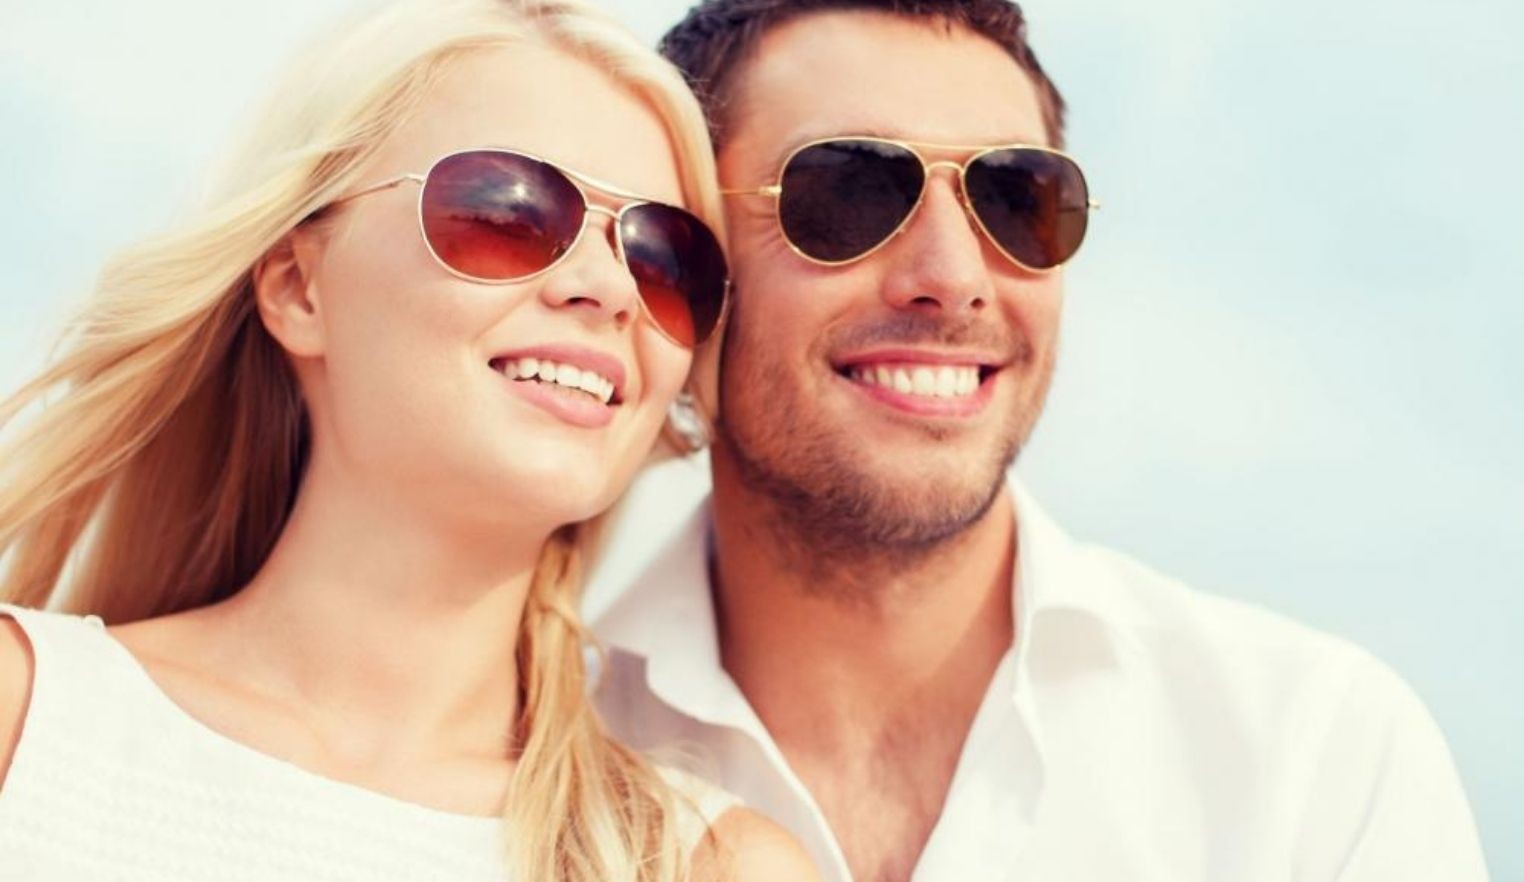 Occhiali da sole sicuri: come evitare danni agli occhi